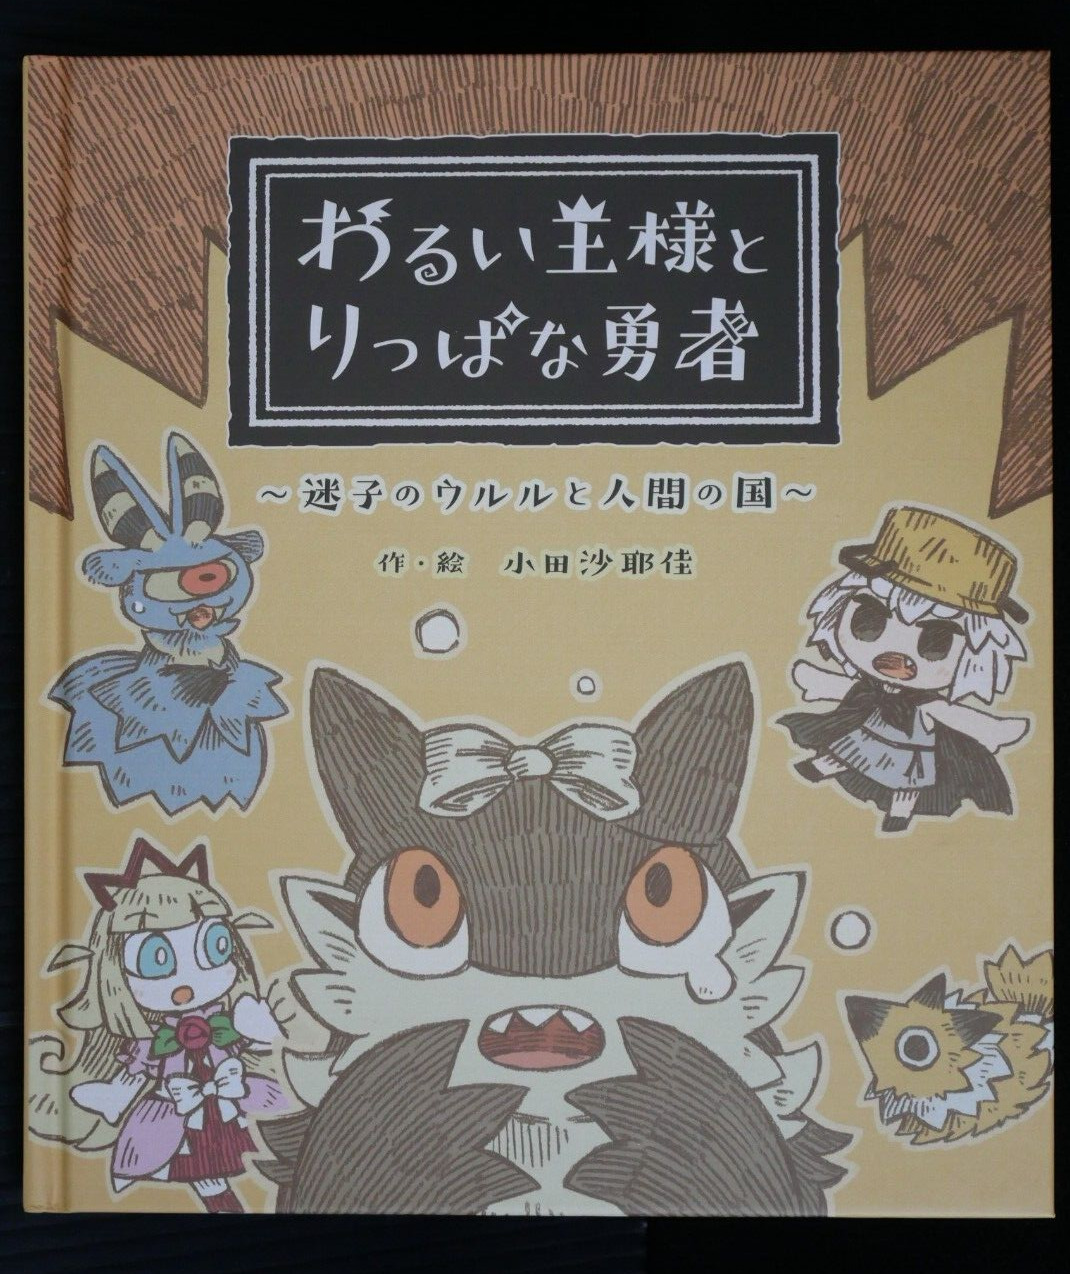 The Cruel King and the Great Hero Picture Book: Maigo no Ururu to Nigen no Kuni